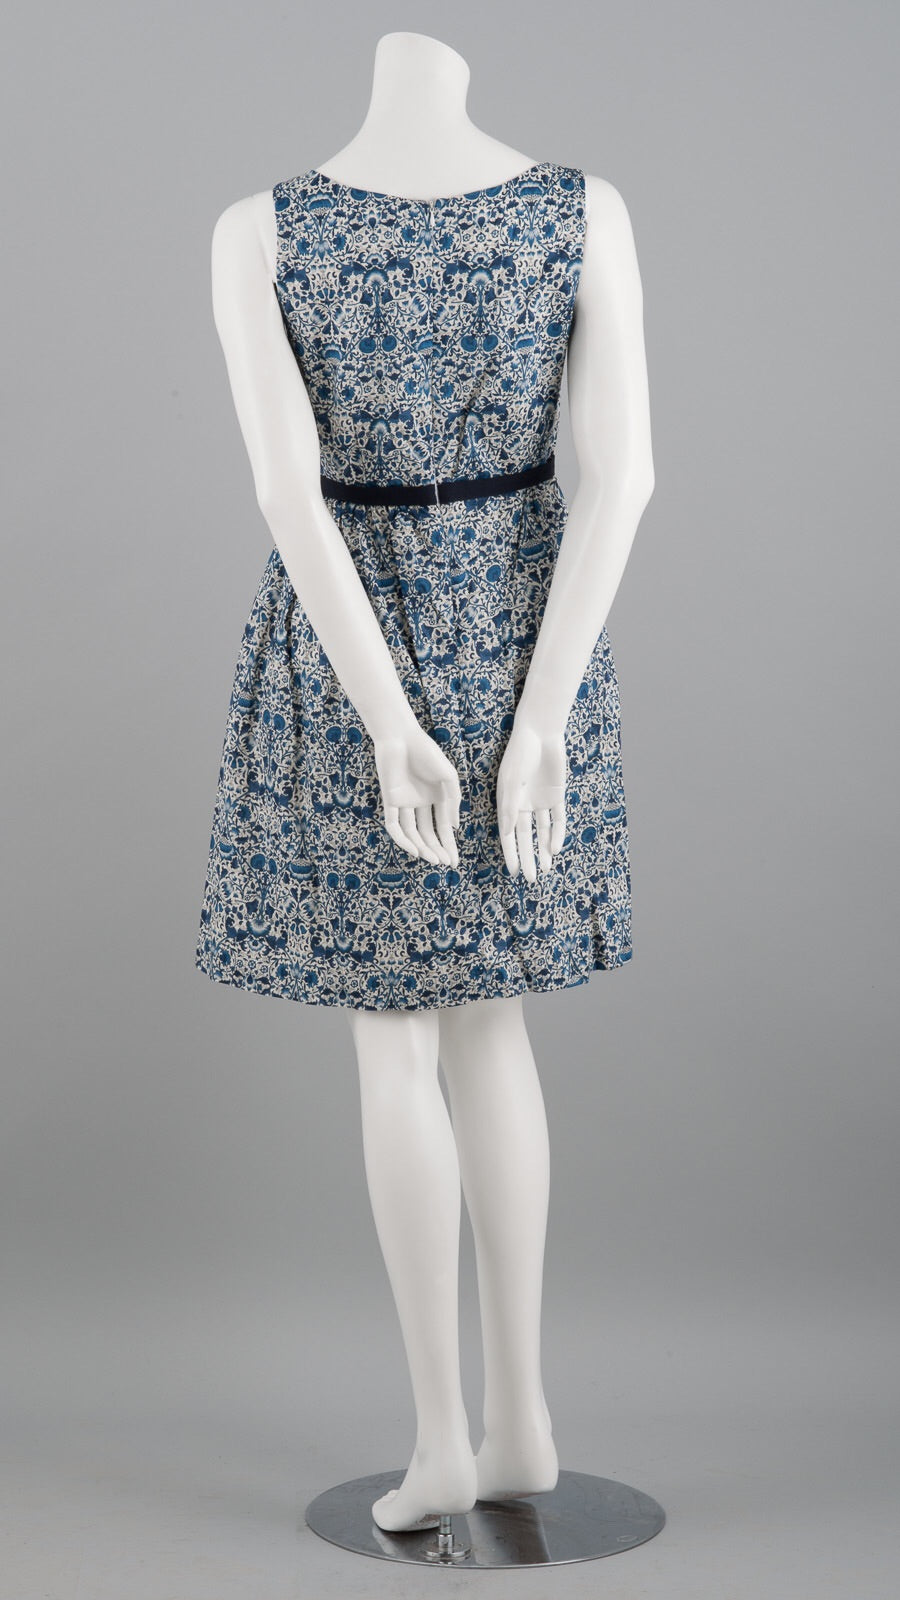 Rita Liberty cotton lawn dress